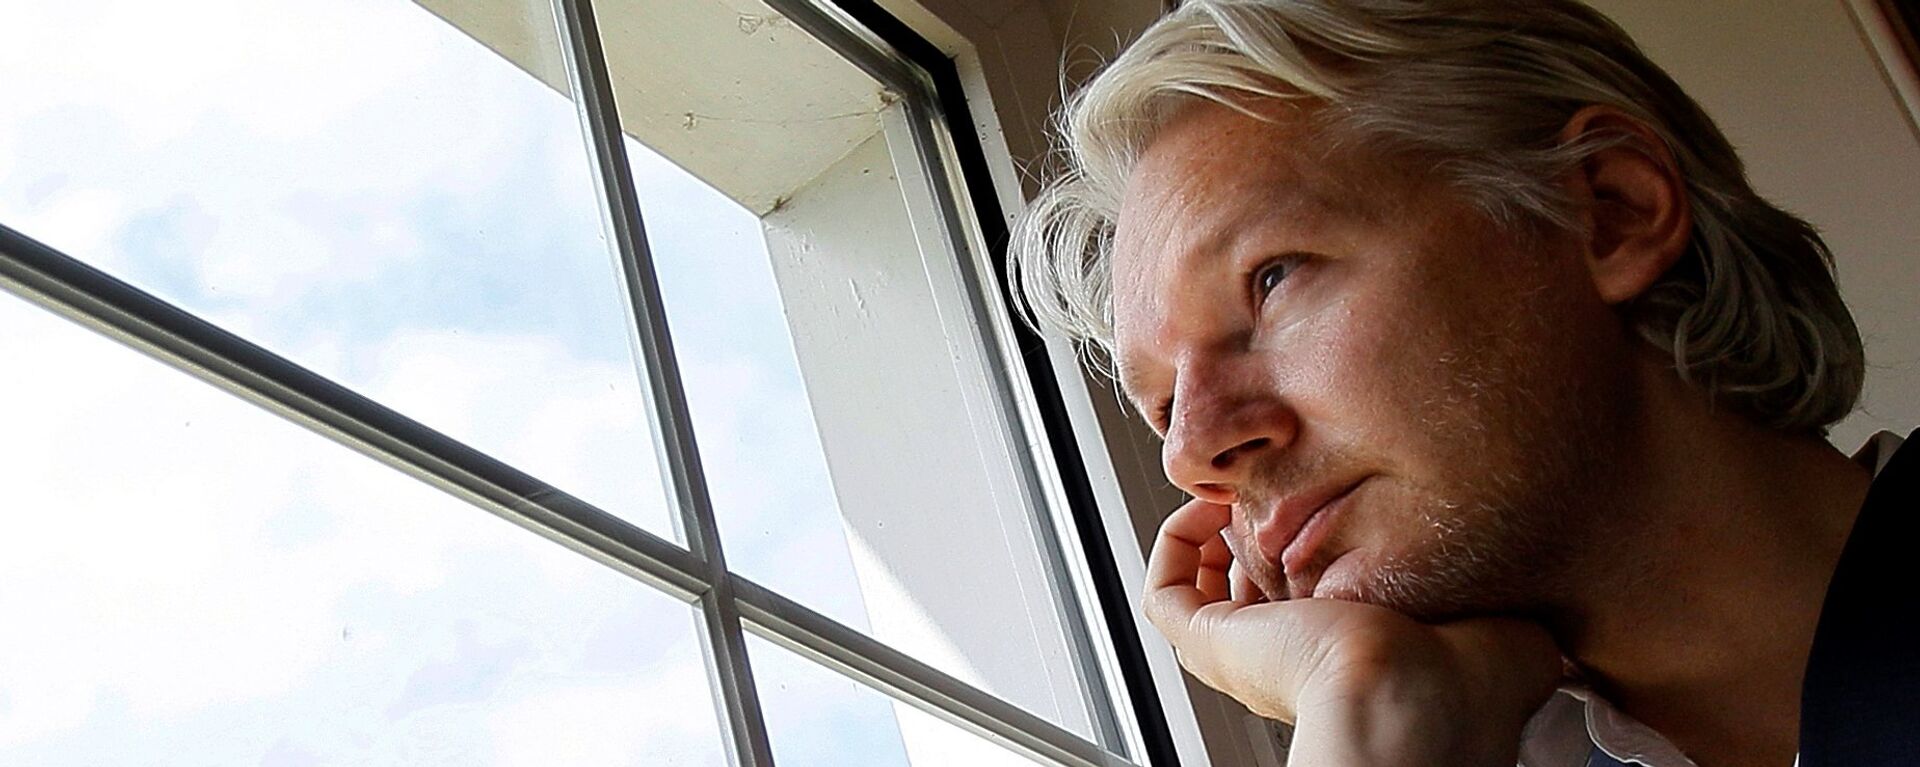 Julian Assange, fundador de WikiLeaks  - Sputnik Mundo, 1920, 21.07.2021